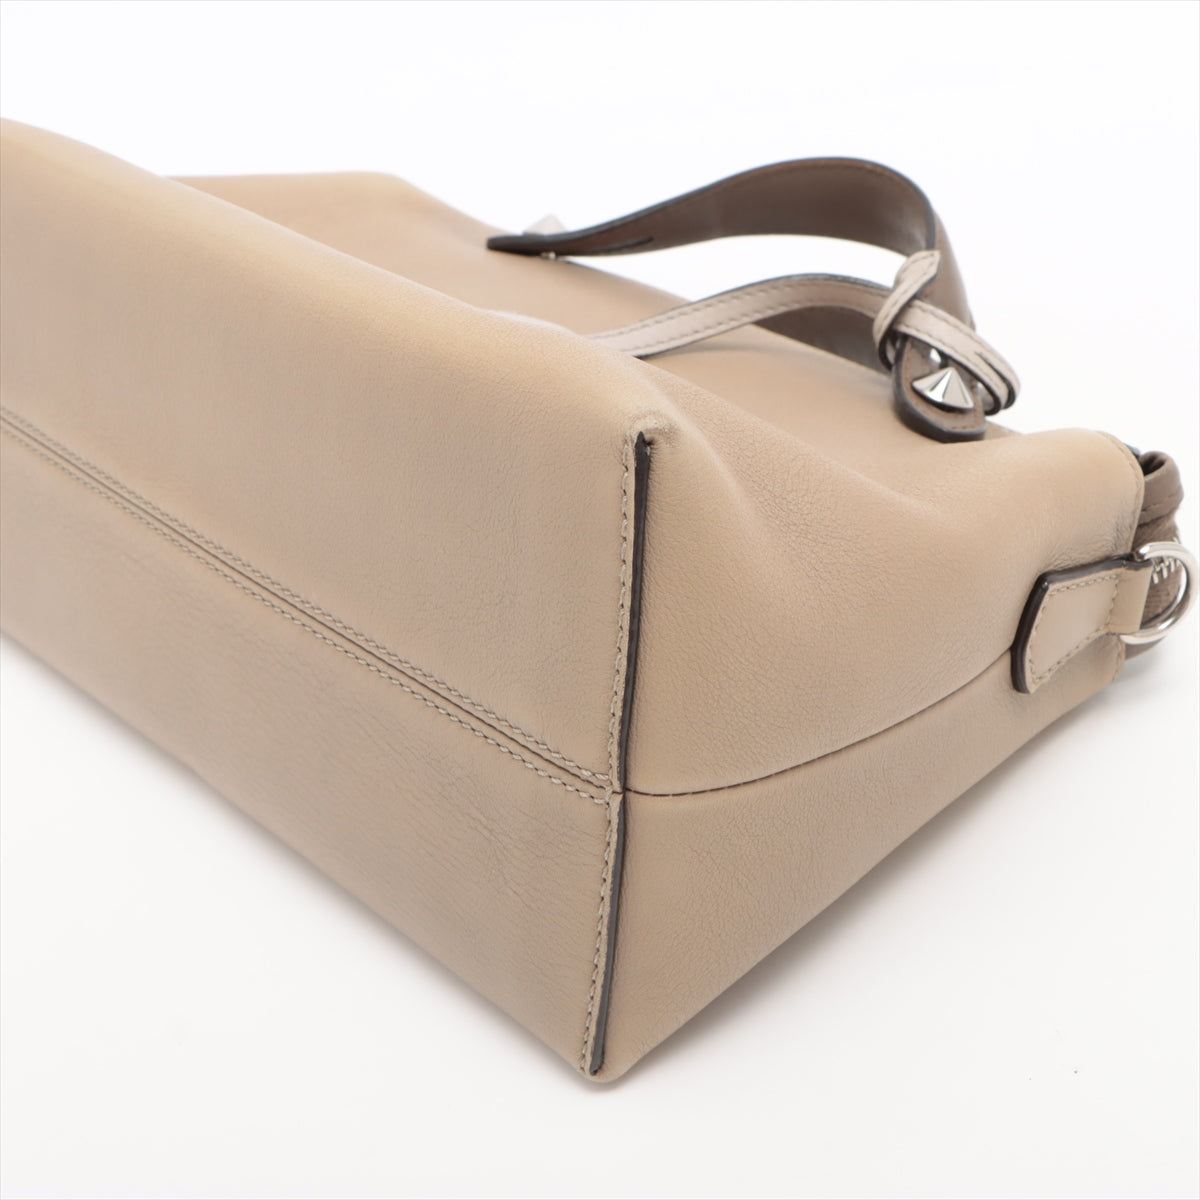 Fendi By the Way Medium Leather 2 Way Handbag Beige 8BL124